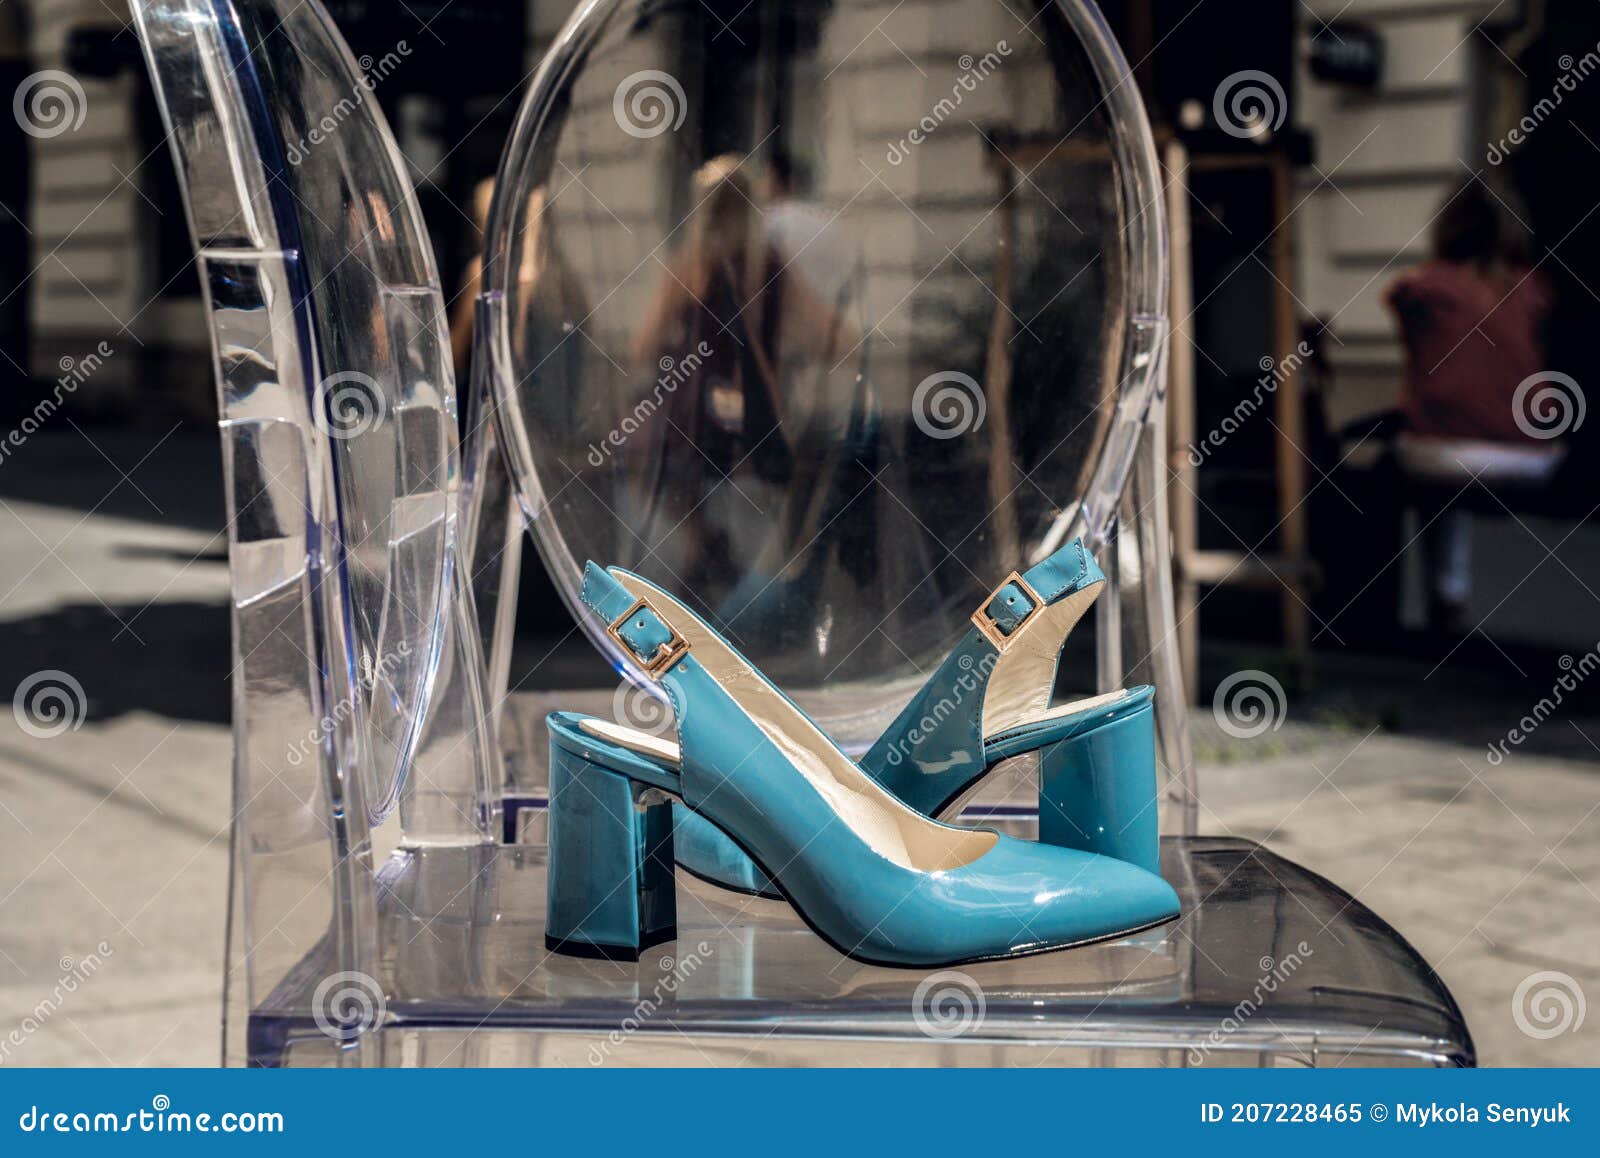 Zapatos Azules Hembra En Cuero Con Patente Sobre Una Silla De Transparente Imagen de archivo - Imagen de elegante, moderno: 207228465